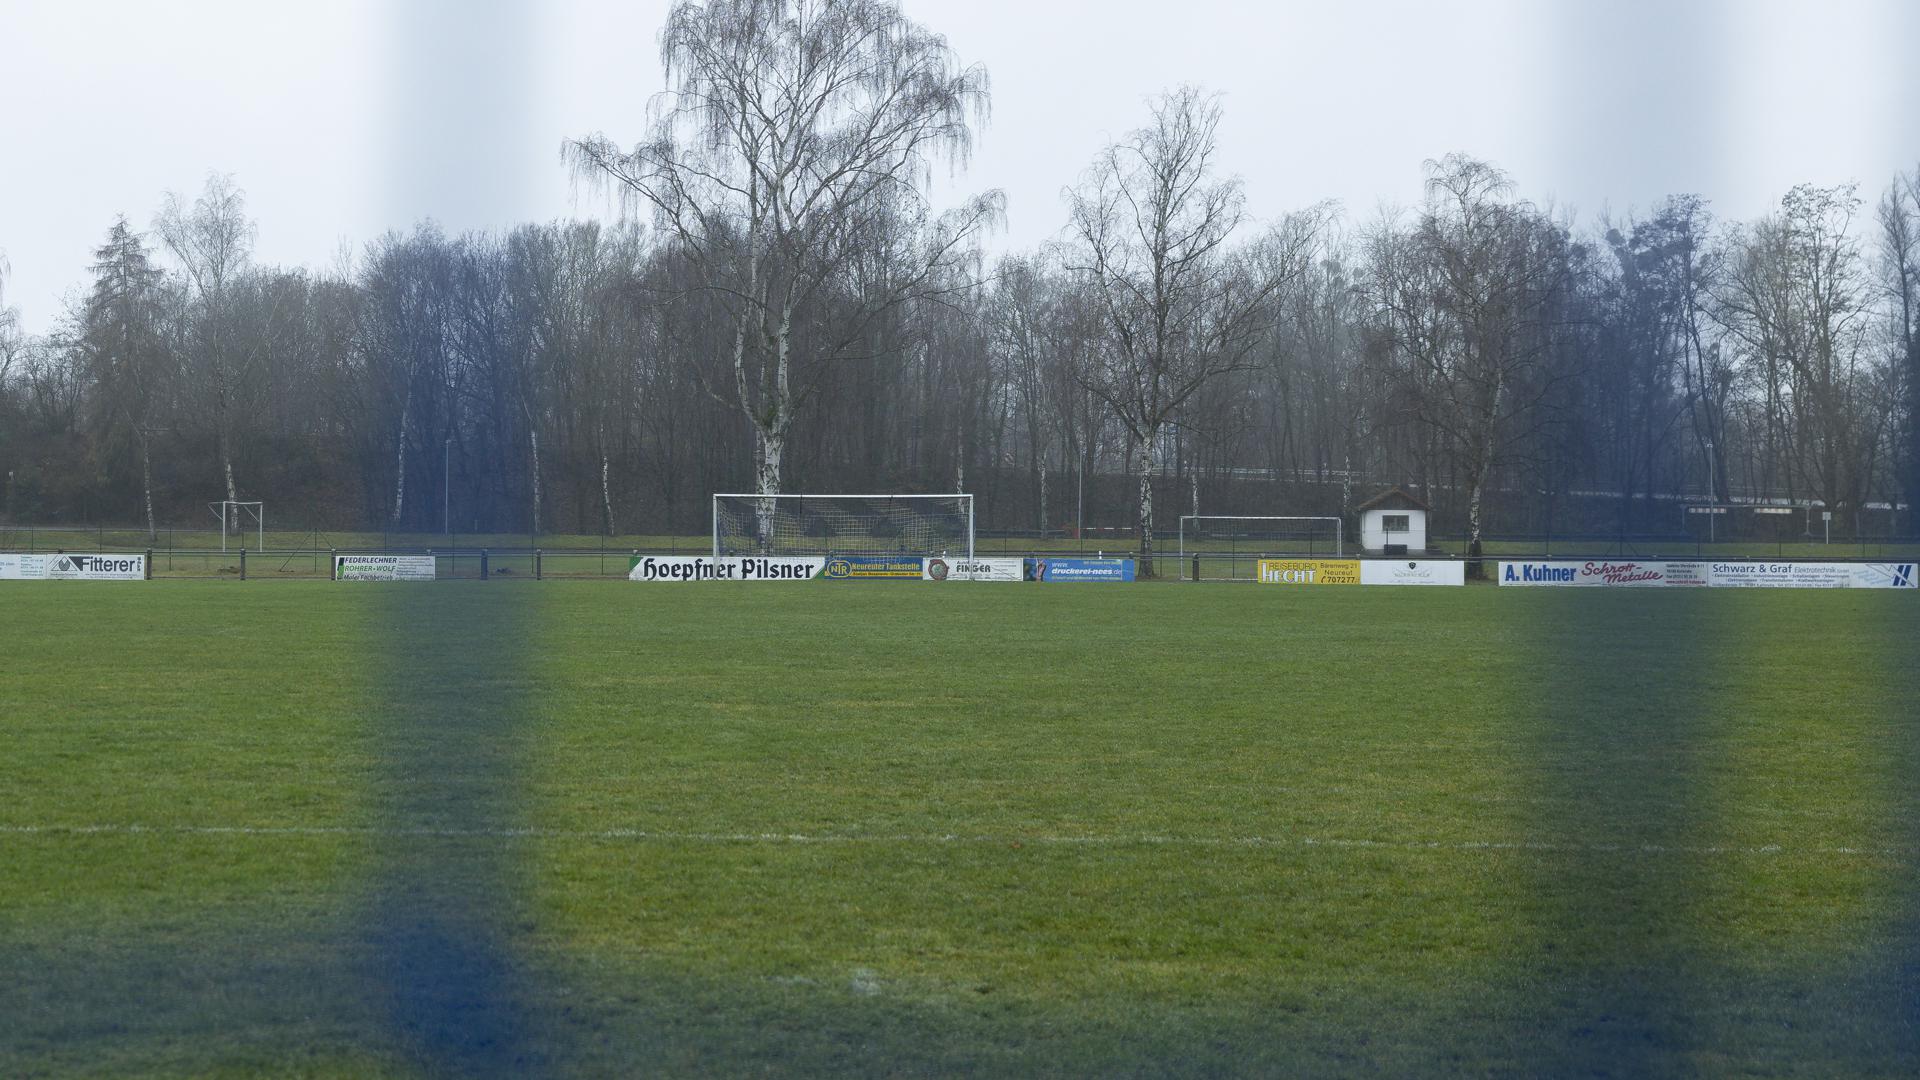 Leeres Spielfeld, Spielabsage aufgrund der neuen Covid19 Richtlinien 

GES/ Fussball/ Landesliga: FC Neureut - SV Huchenfeld,  04.12.2021
